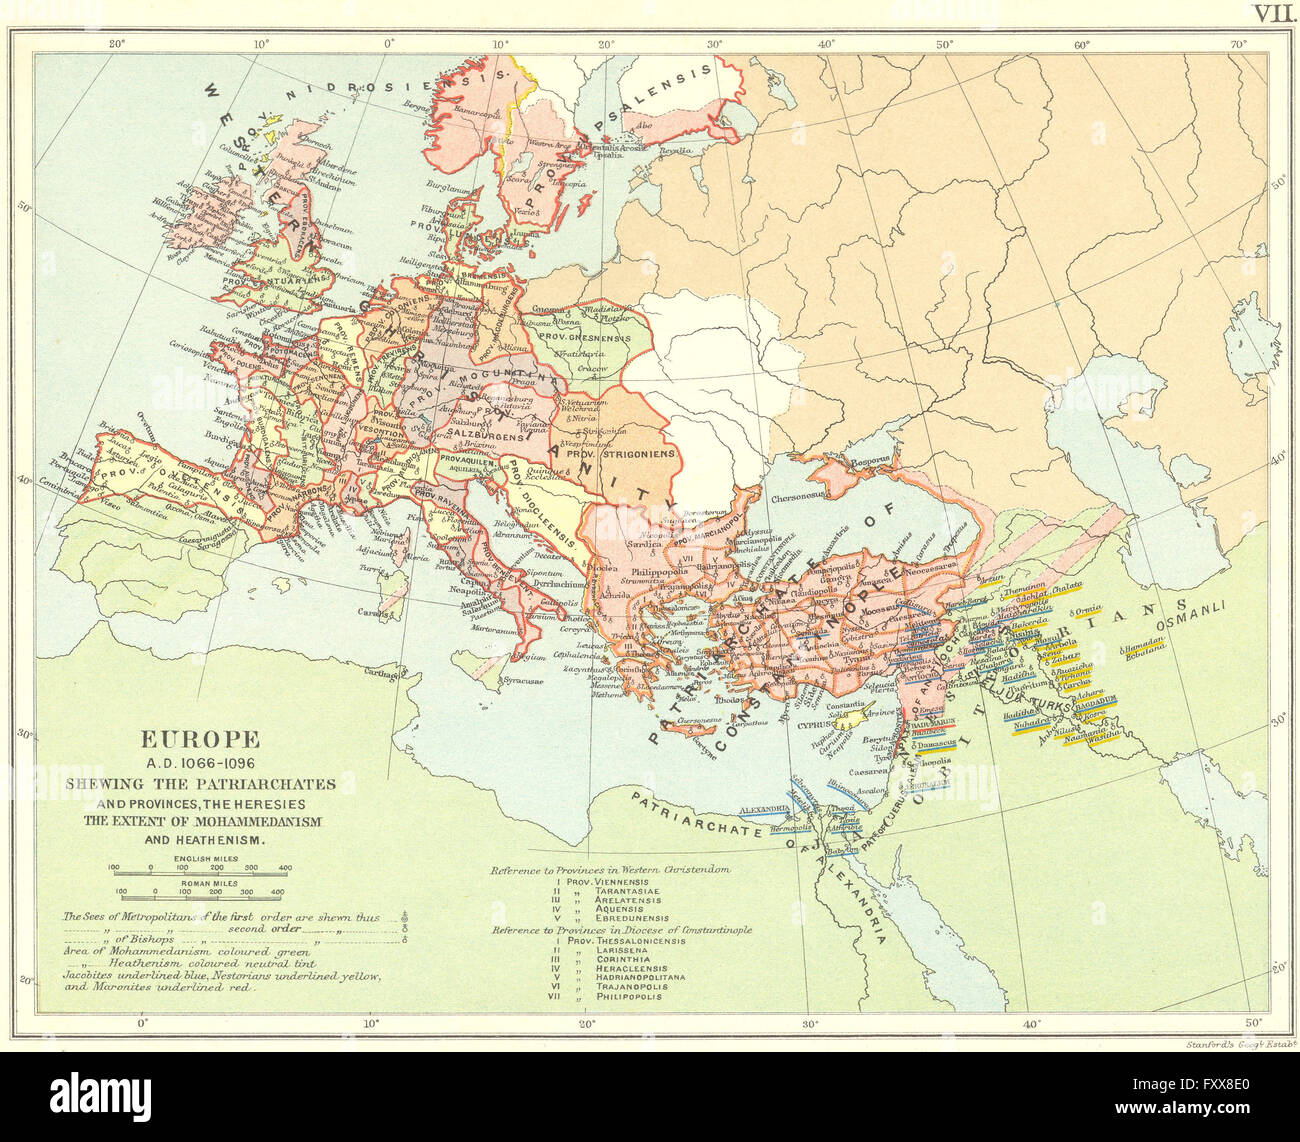 RELIGIÖSE Europa 1066-1096AD: Patriarchate Provinzen Häresien Islam, 1897-Karte Stockfoto